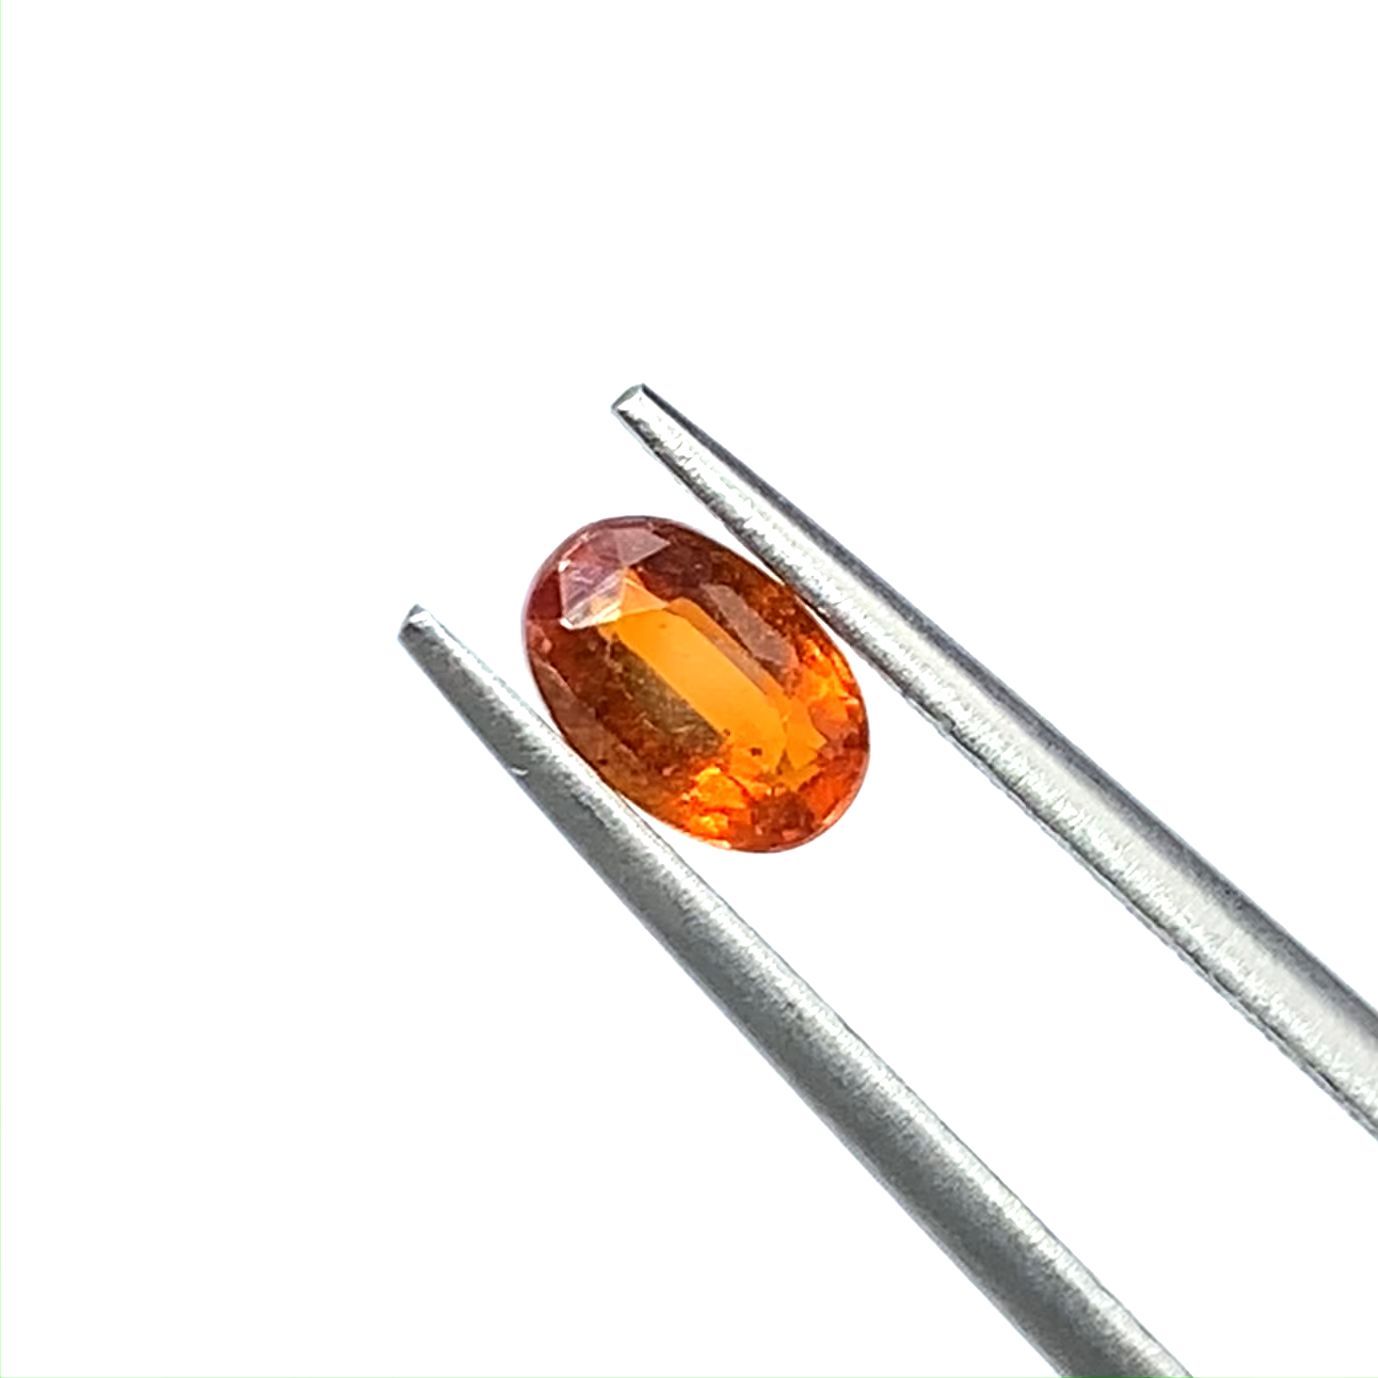 オレンジカイヤナイト(宝石名カイヤナイト) ネパール産 0.63ct 識別済[210310586]6.1×4mm前後 | TOP  STONE(トップストーン)